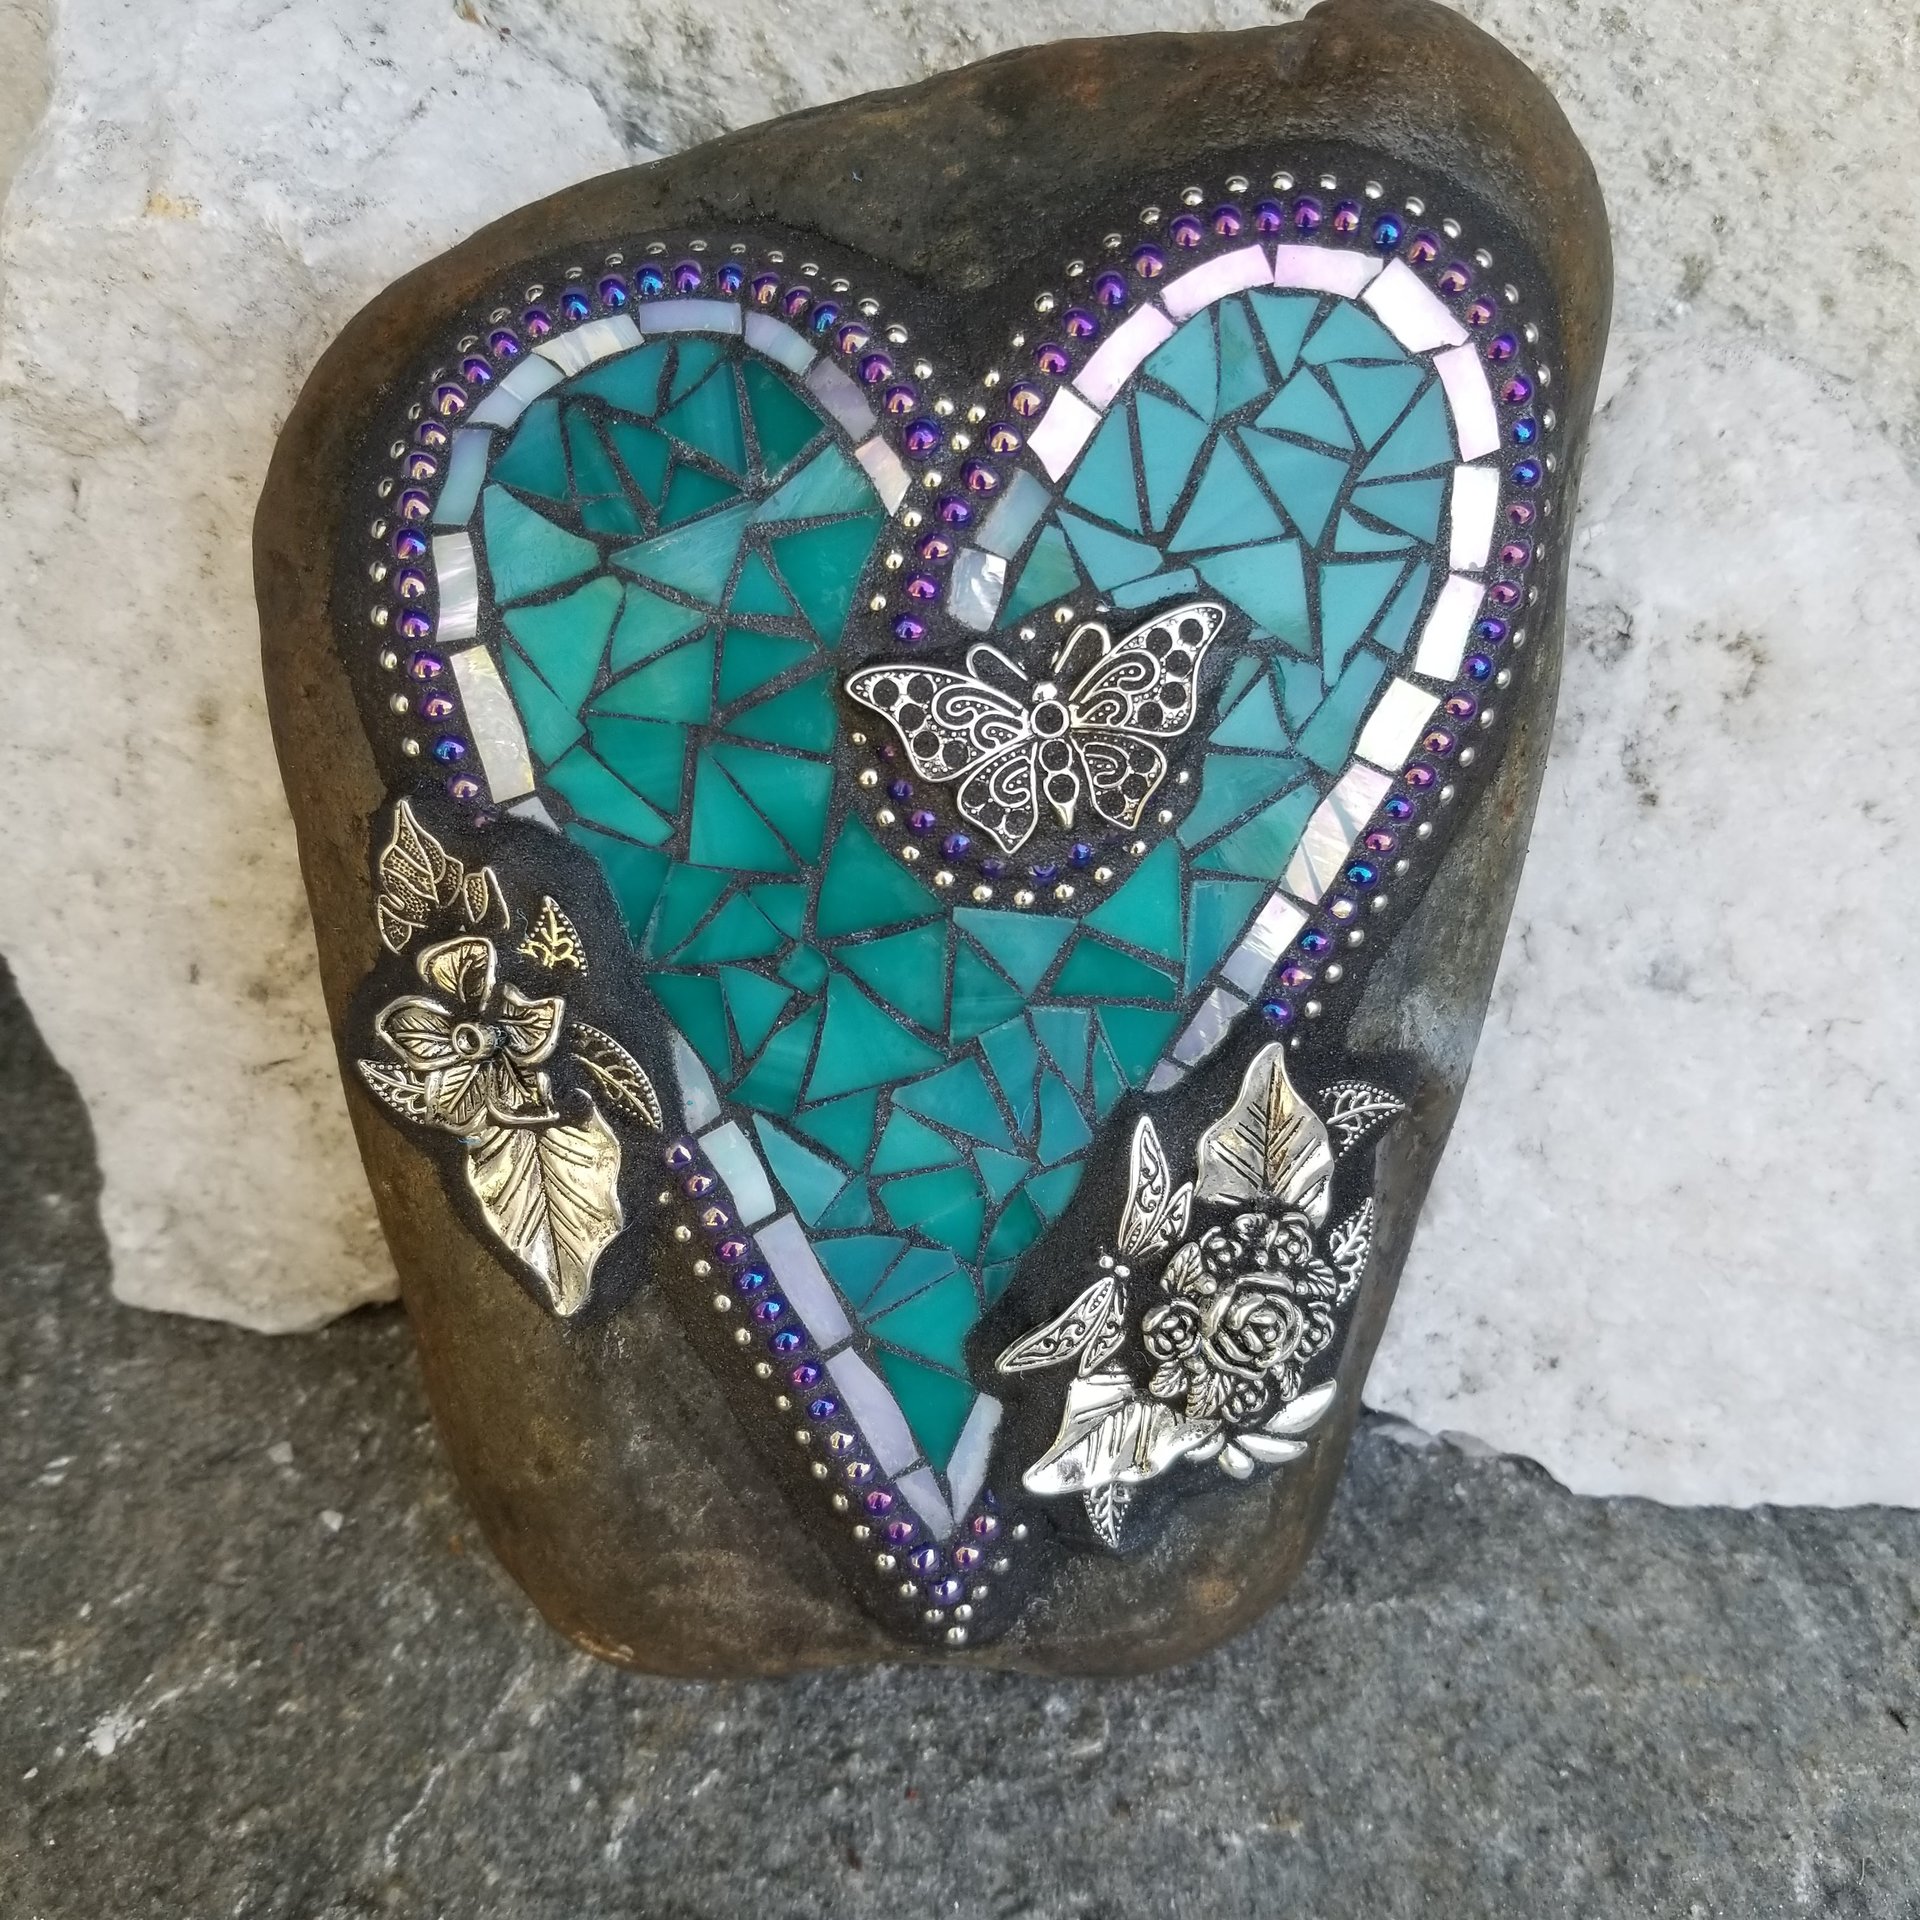 Teal Mosaic Heart Garden Stone, Mosaic Garden Decor